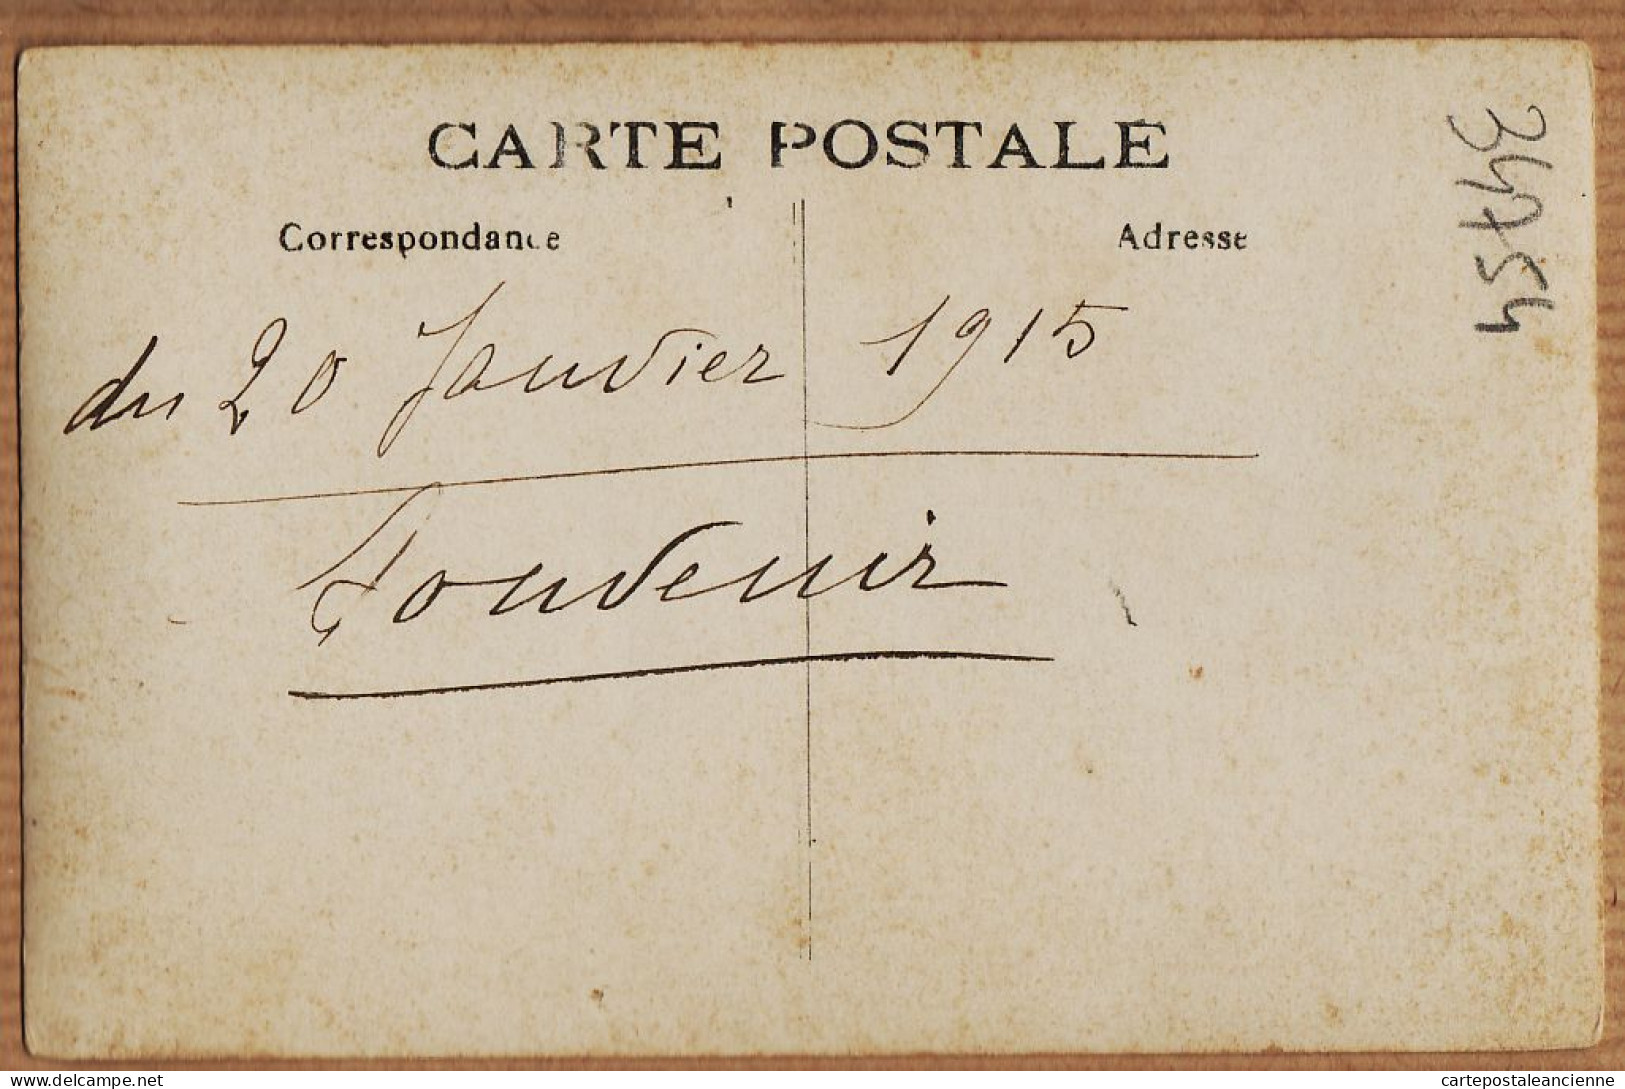 16444 / Carte-Photo Médaillon SOUVENIR 20 Janvier 1915 Petit Chateau Particulier à Localiser - Castillos